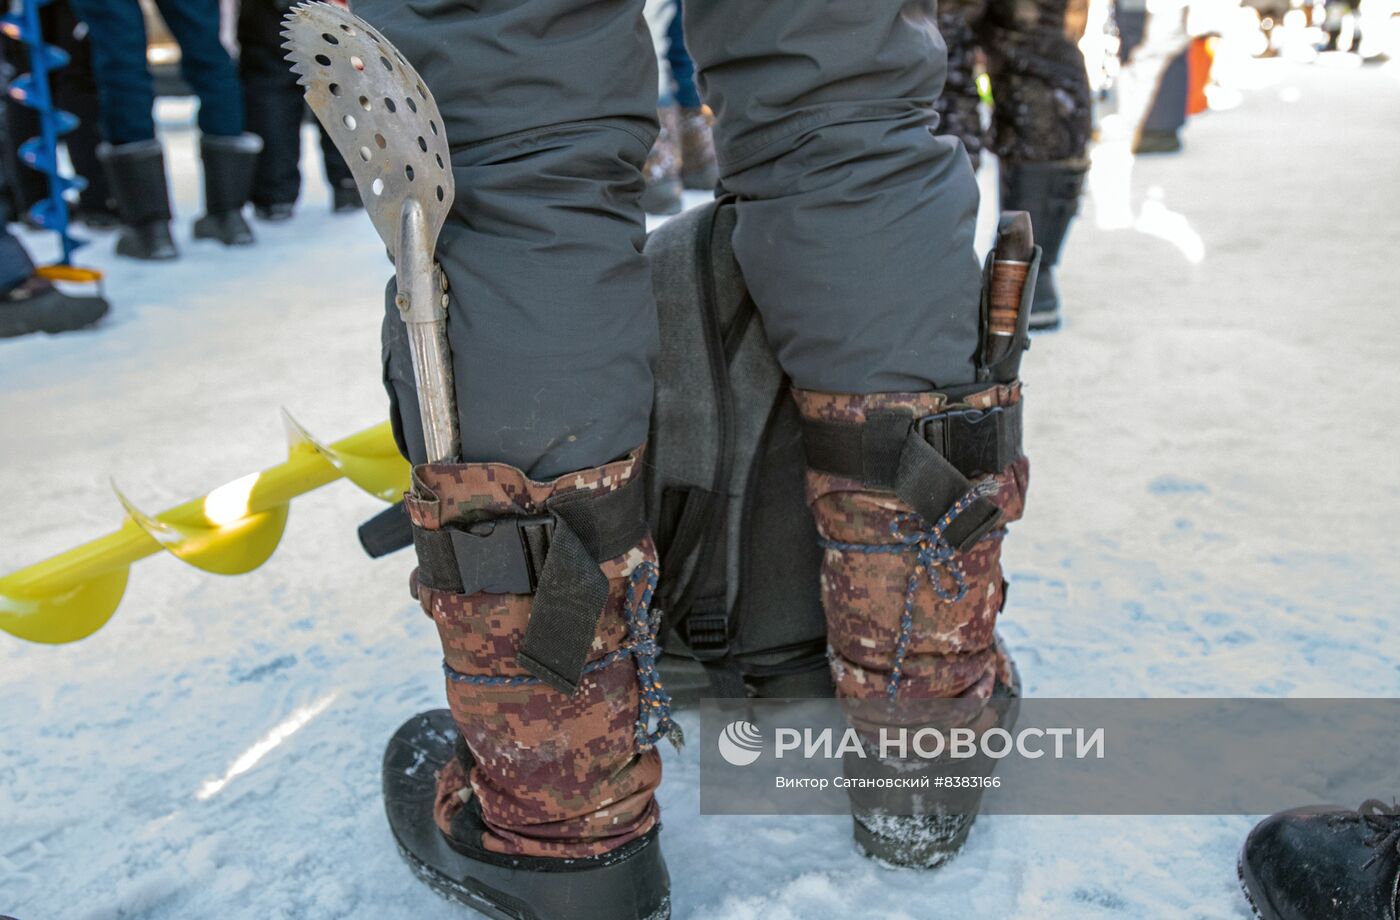 Фестиваль рыбалки на льду "Клевая Колыма" в Магадане